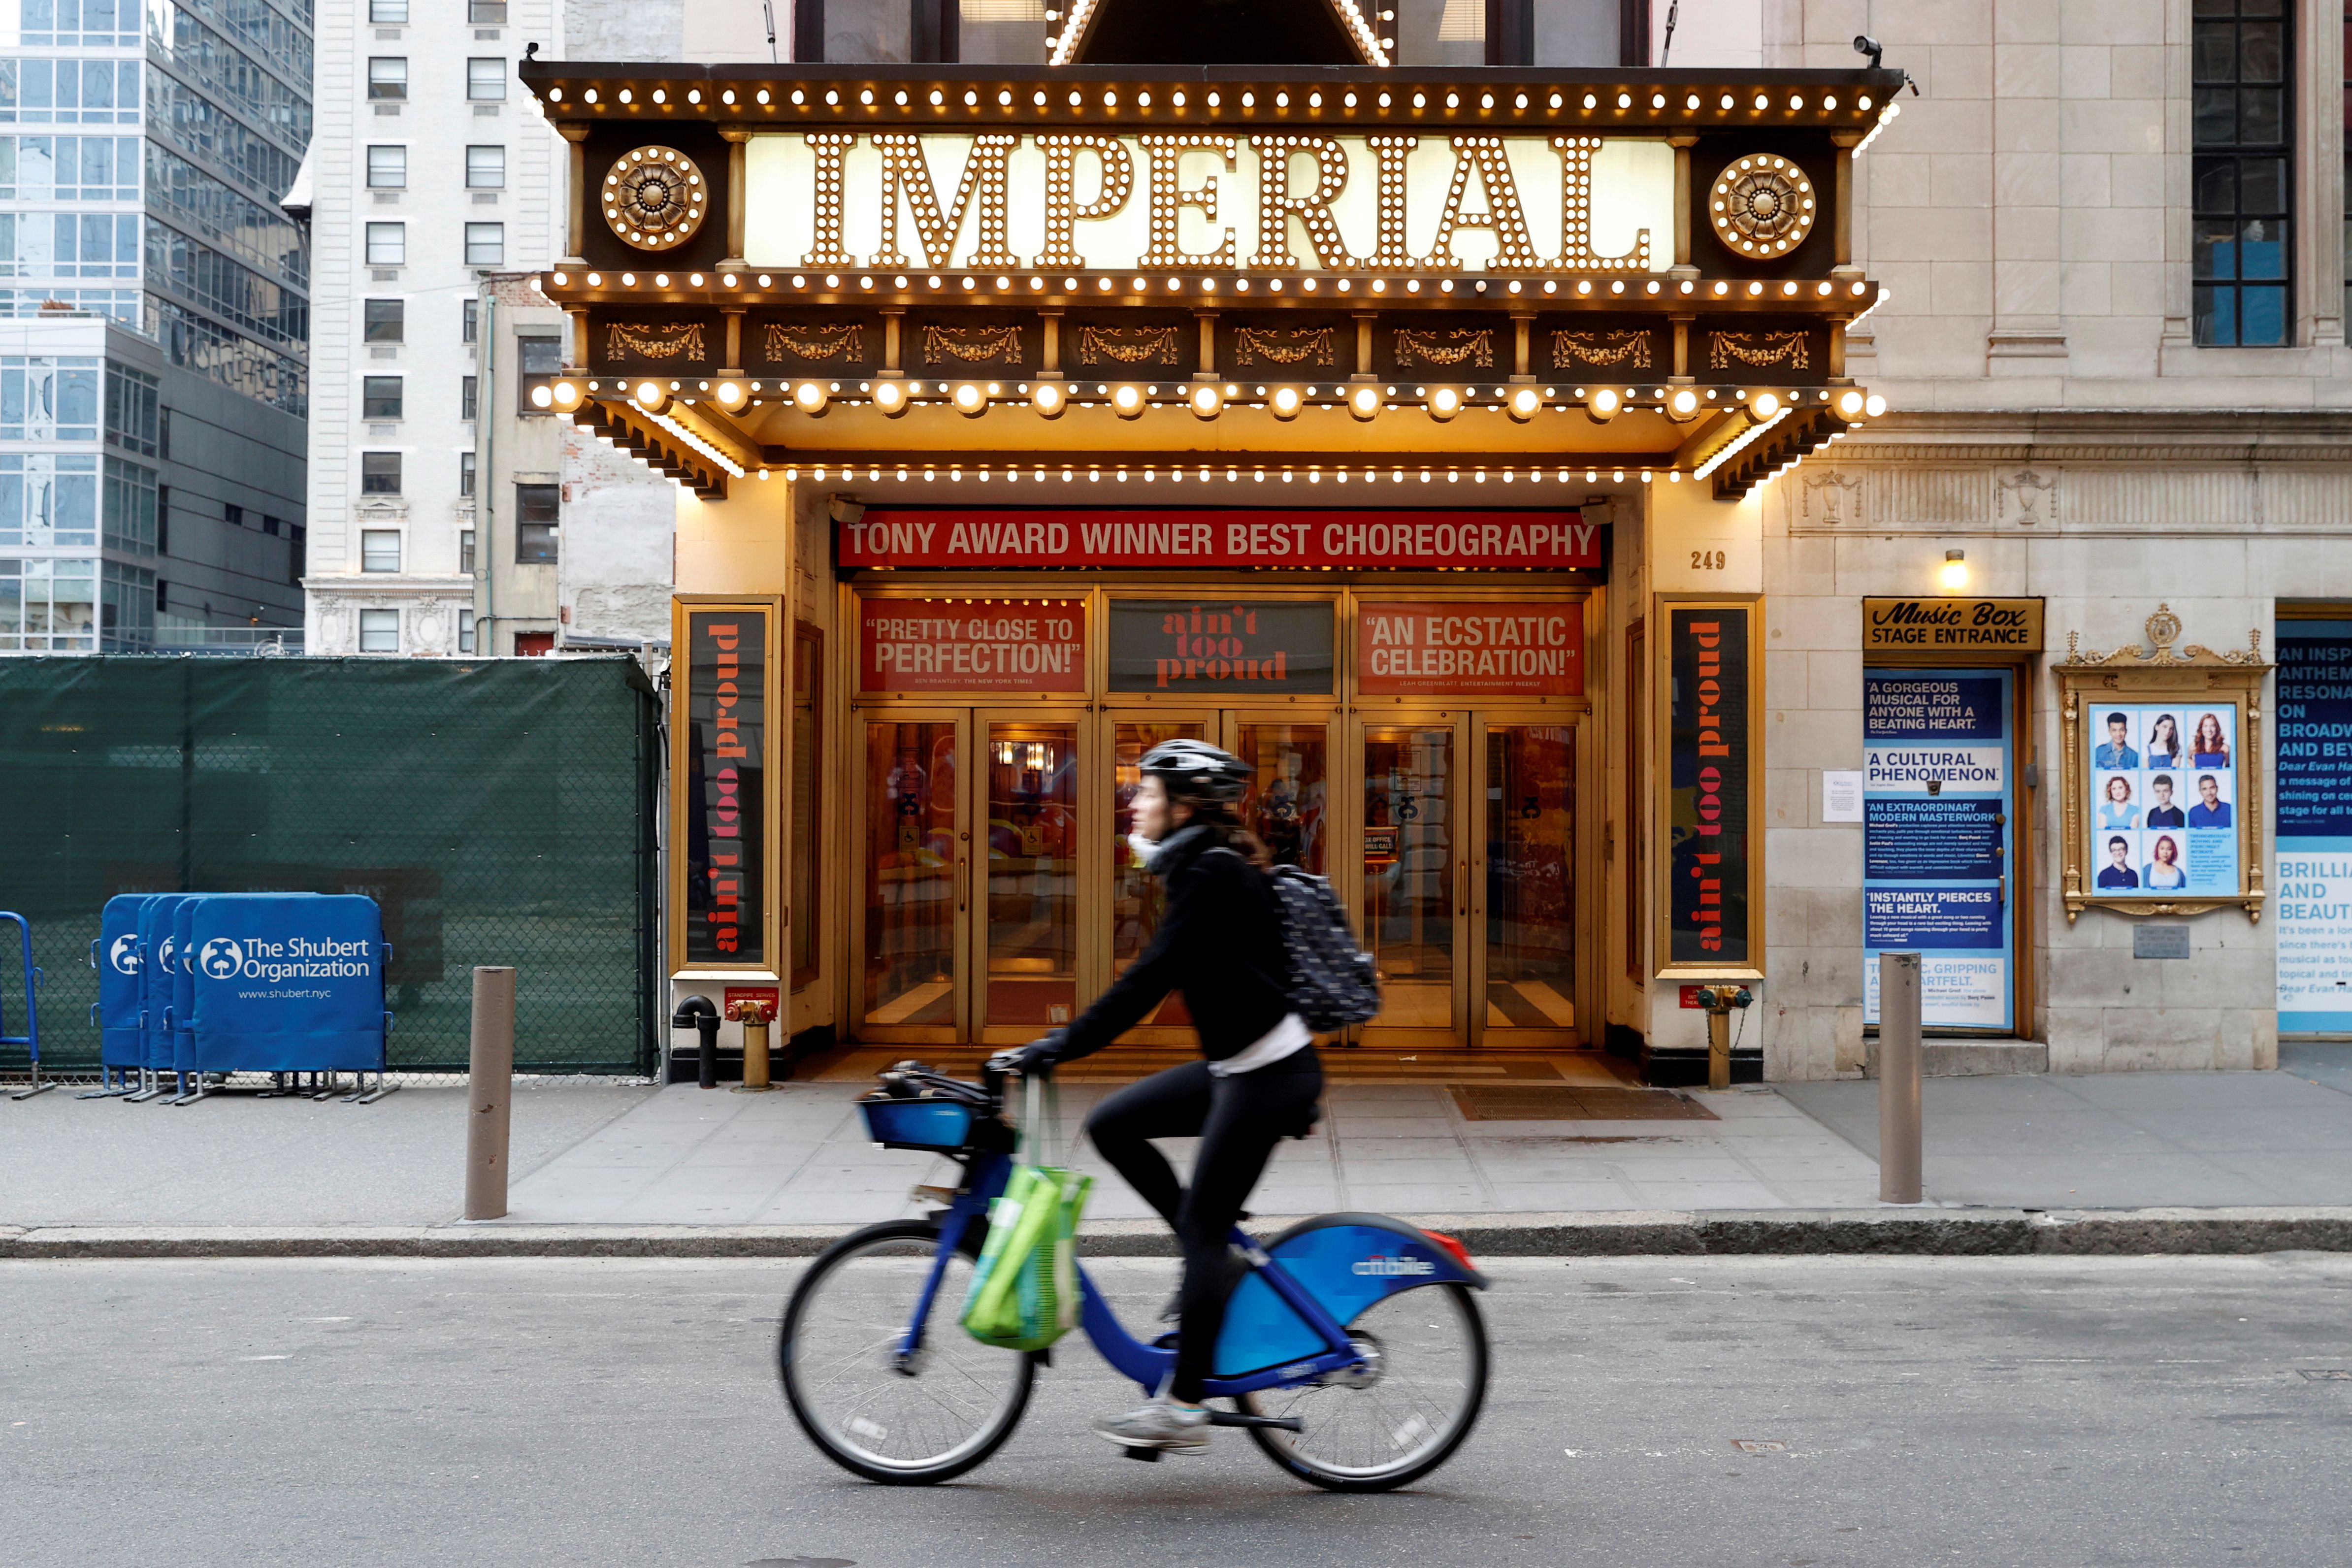 Una mujer circula en bicileta frente al Imperial Theatre, cerrado, en Times Square (REUTERS/Mike Segar)